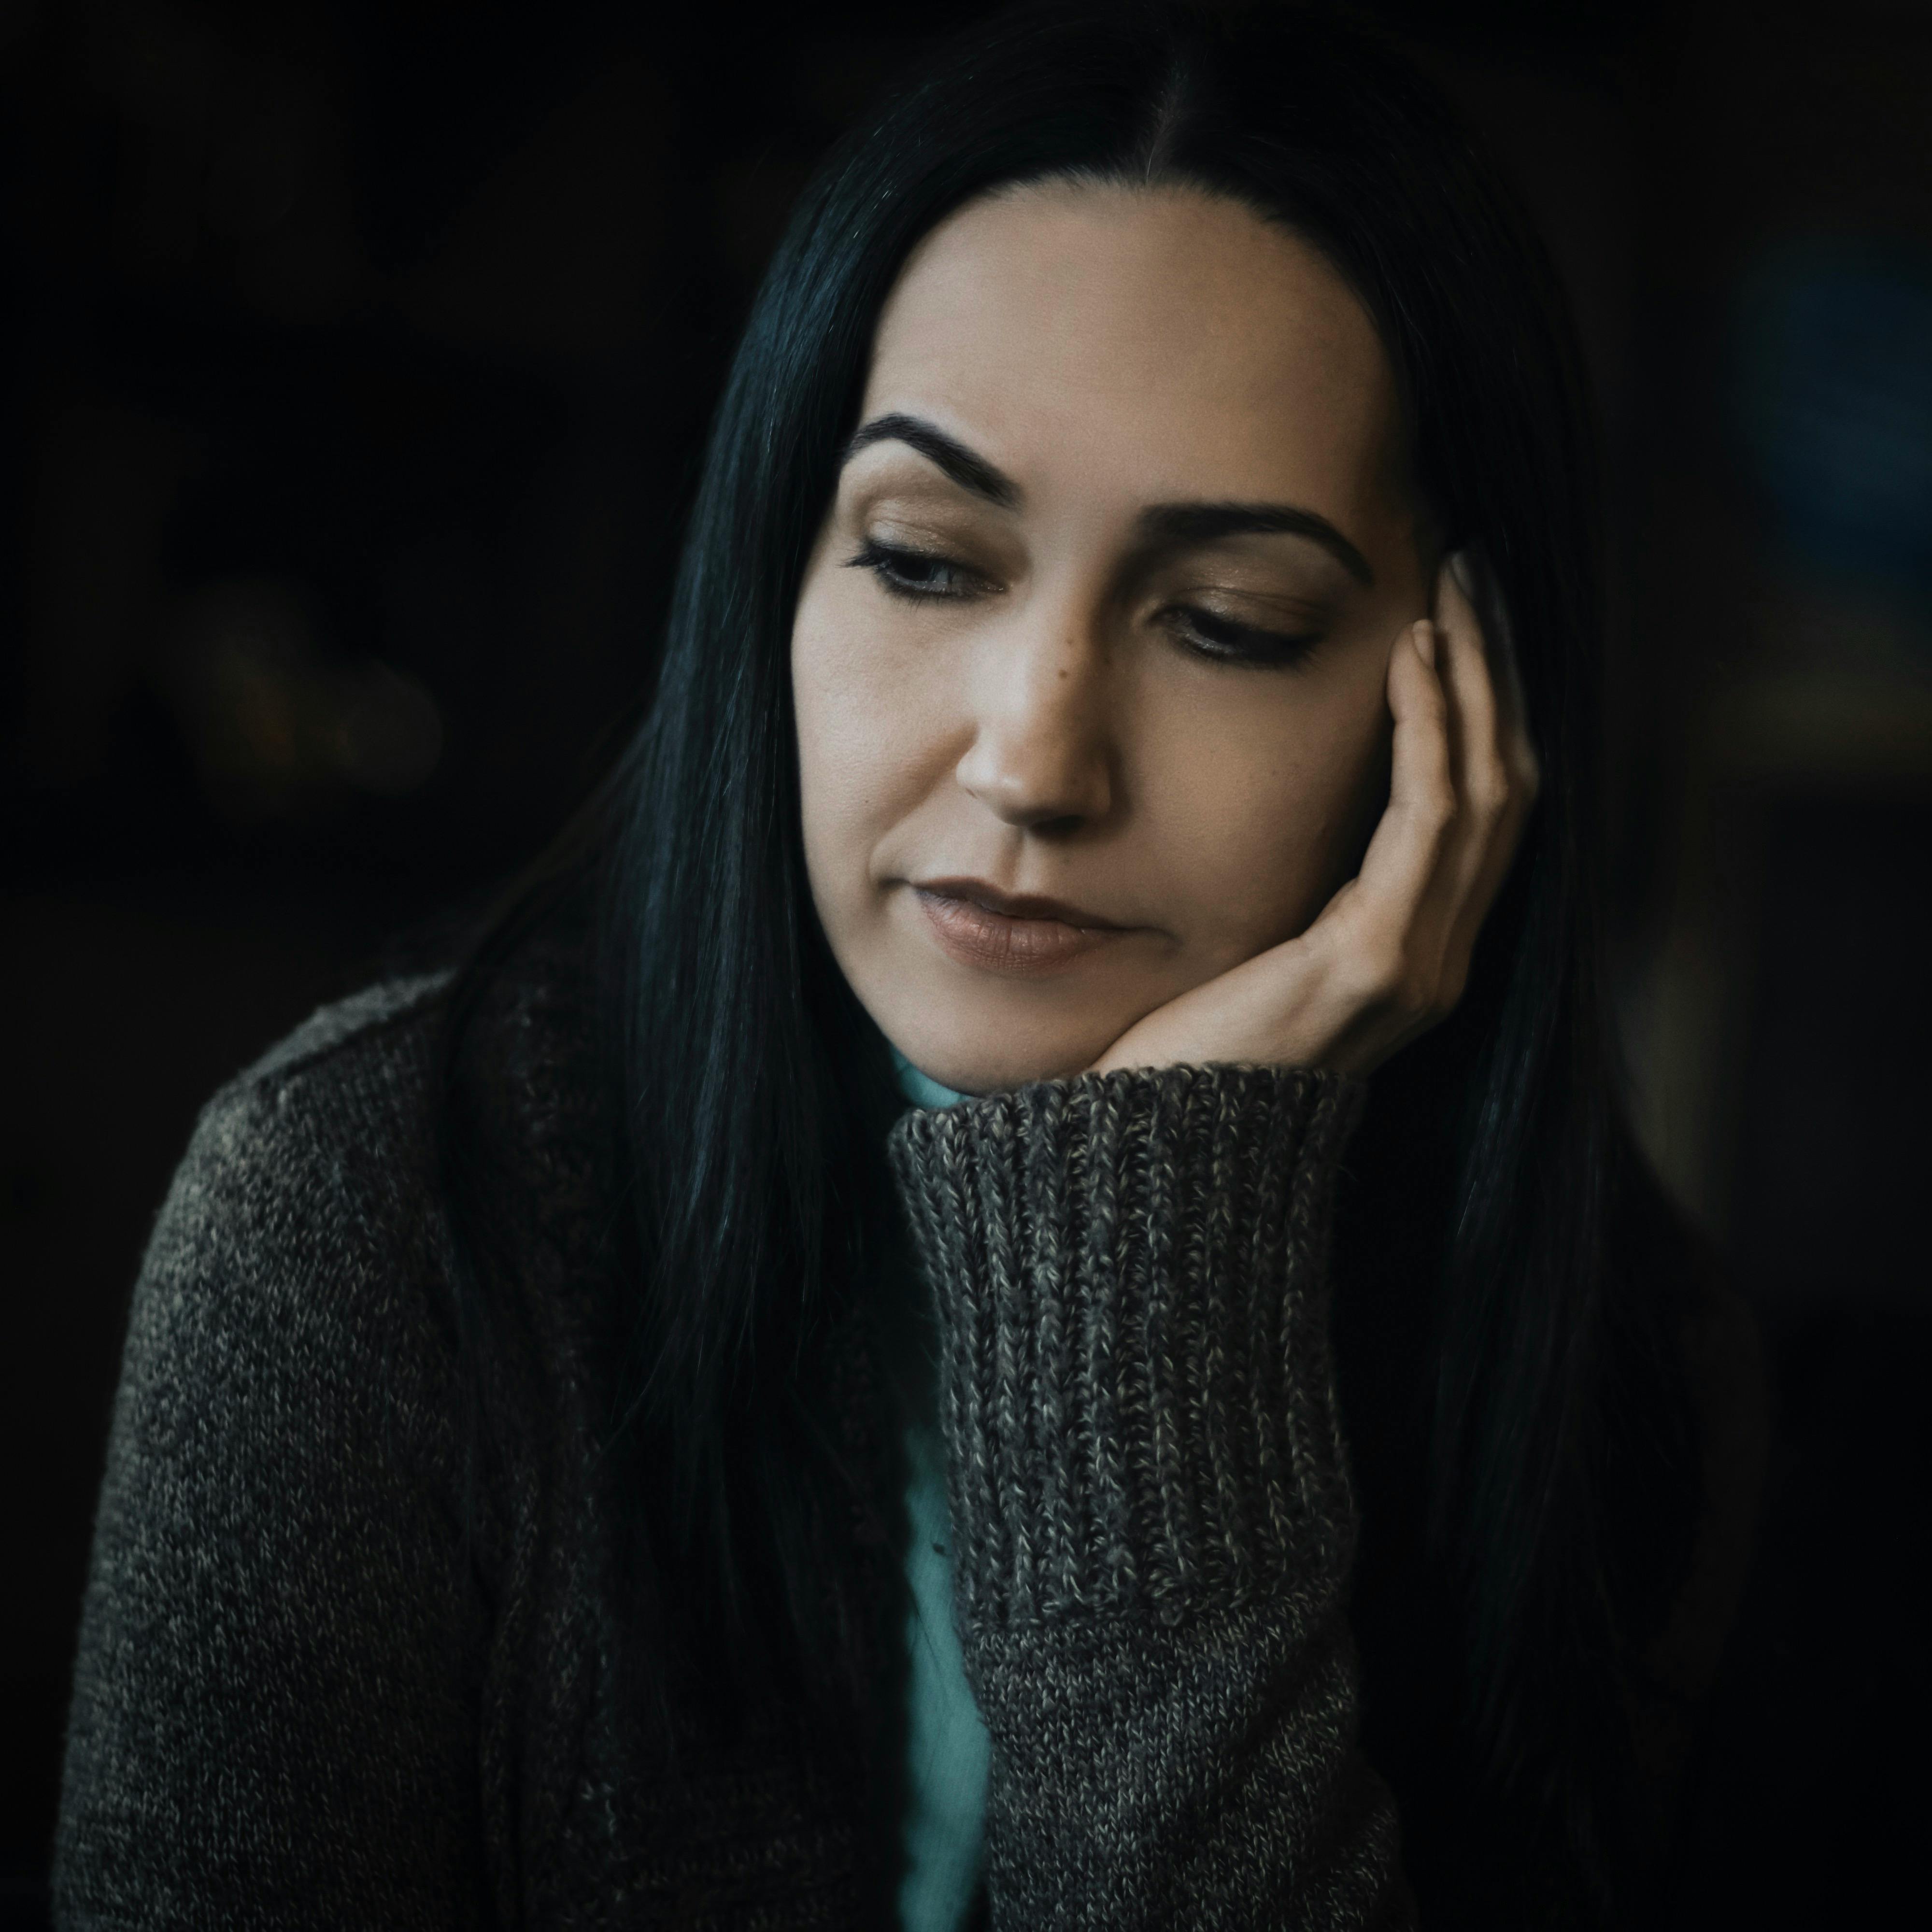 Frau trägt grauen Pullover und sieht traurig aus. | Quelle: Pexels